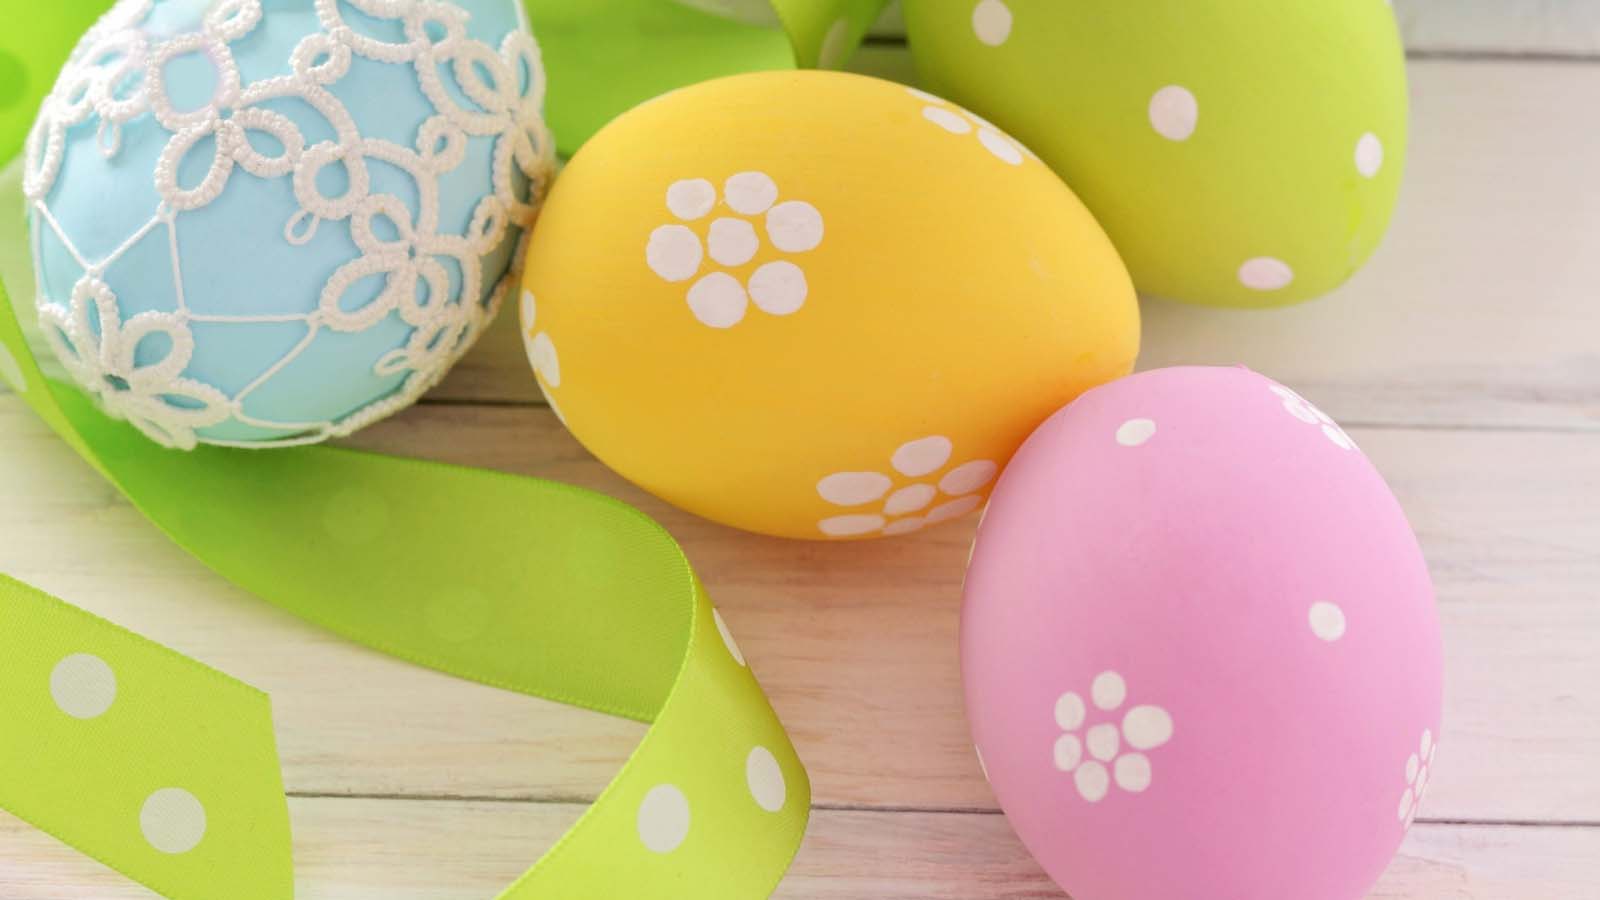 Chiarimenti sulle questioni legali legate al pesare le uova di Pasqua nei supermercati